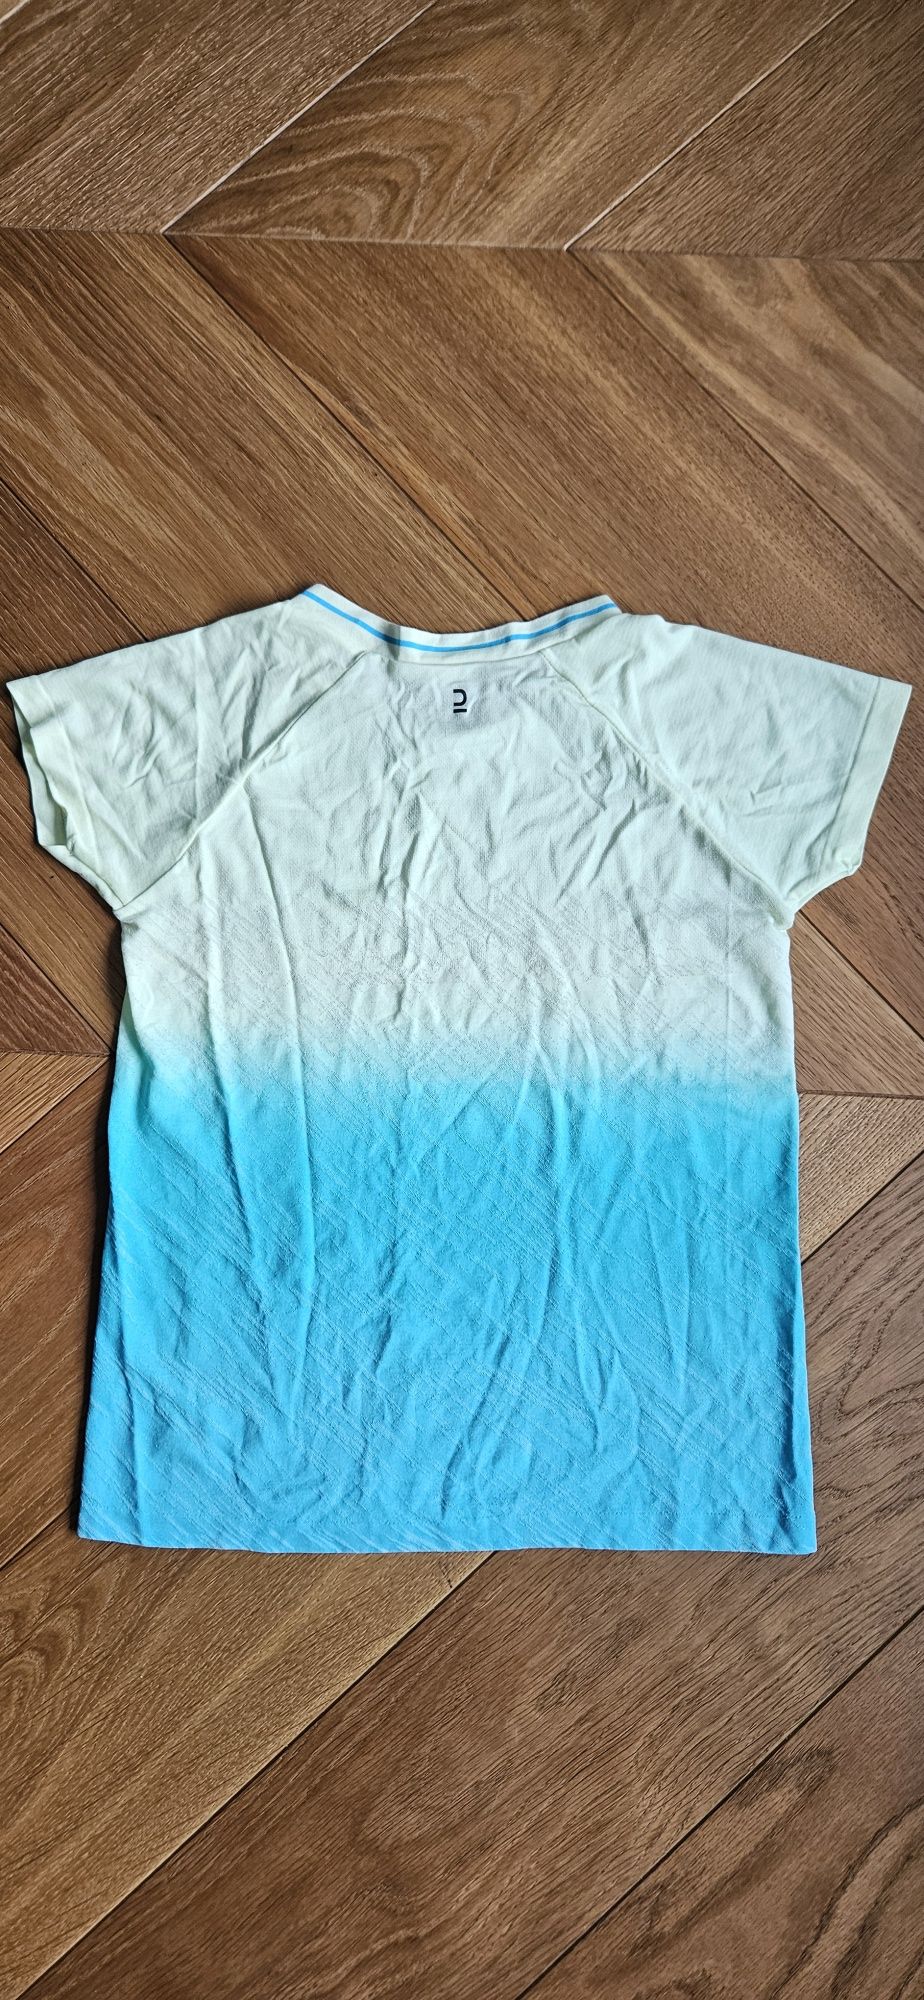 Koszulka do biegania dziecięca Decathlon Kupima, r. 123-130, 7-8 lat